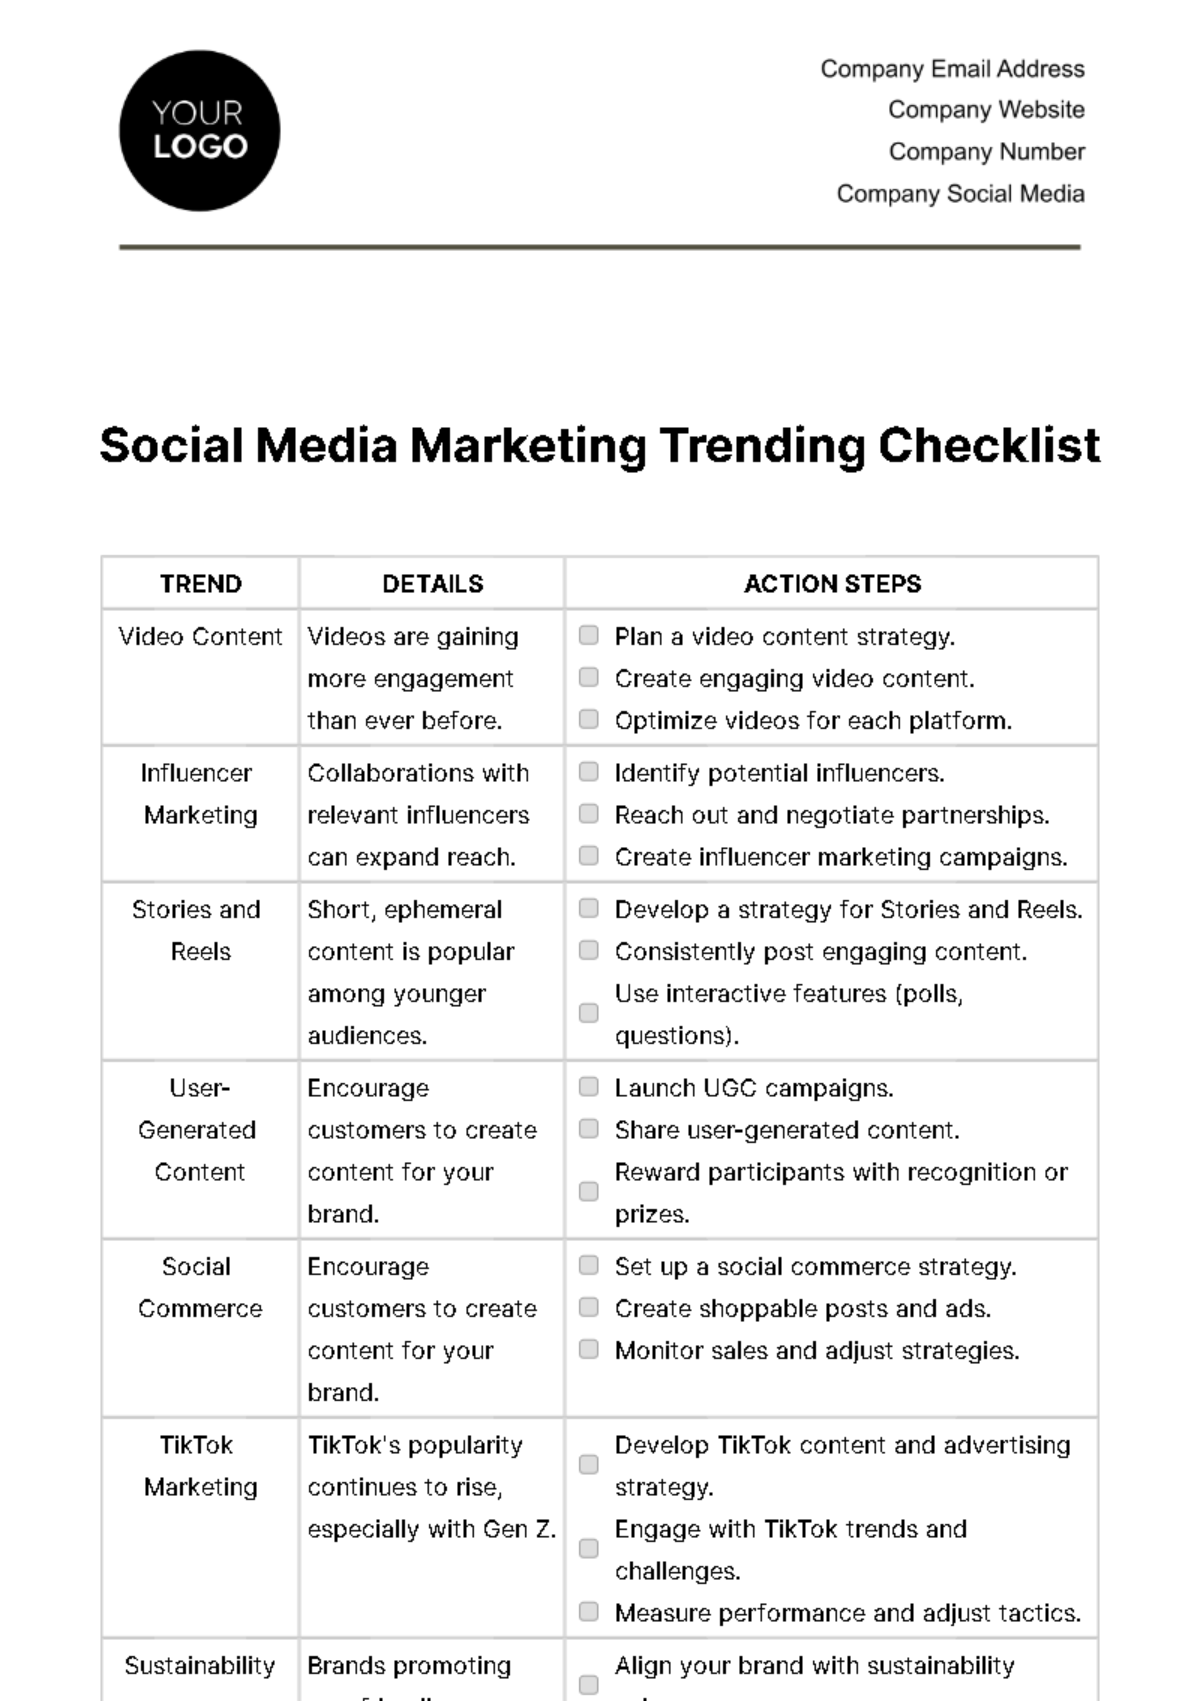 Free Social Media Marketing Trending Checklist Template